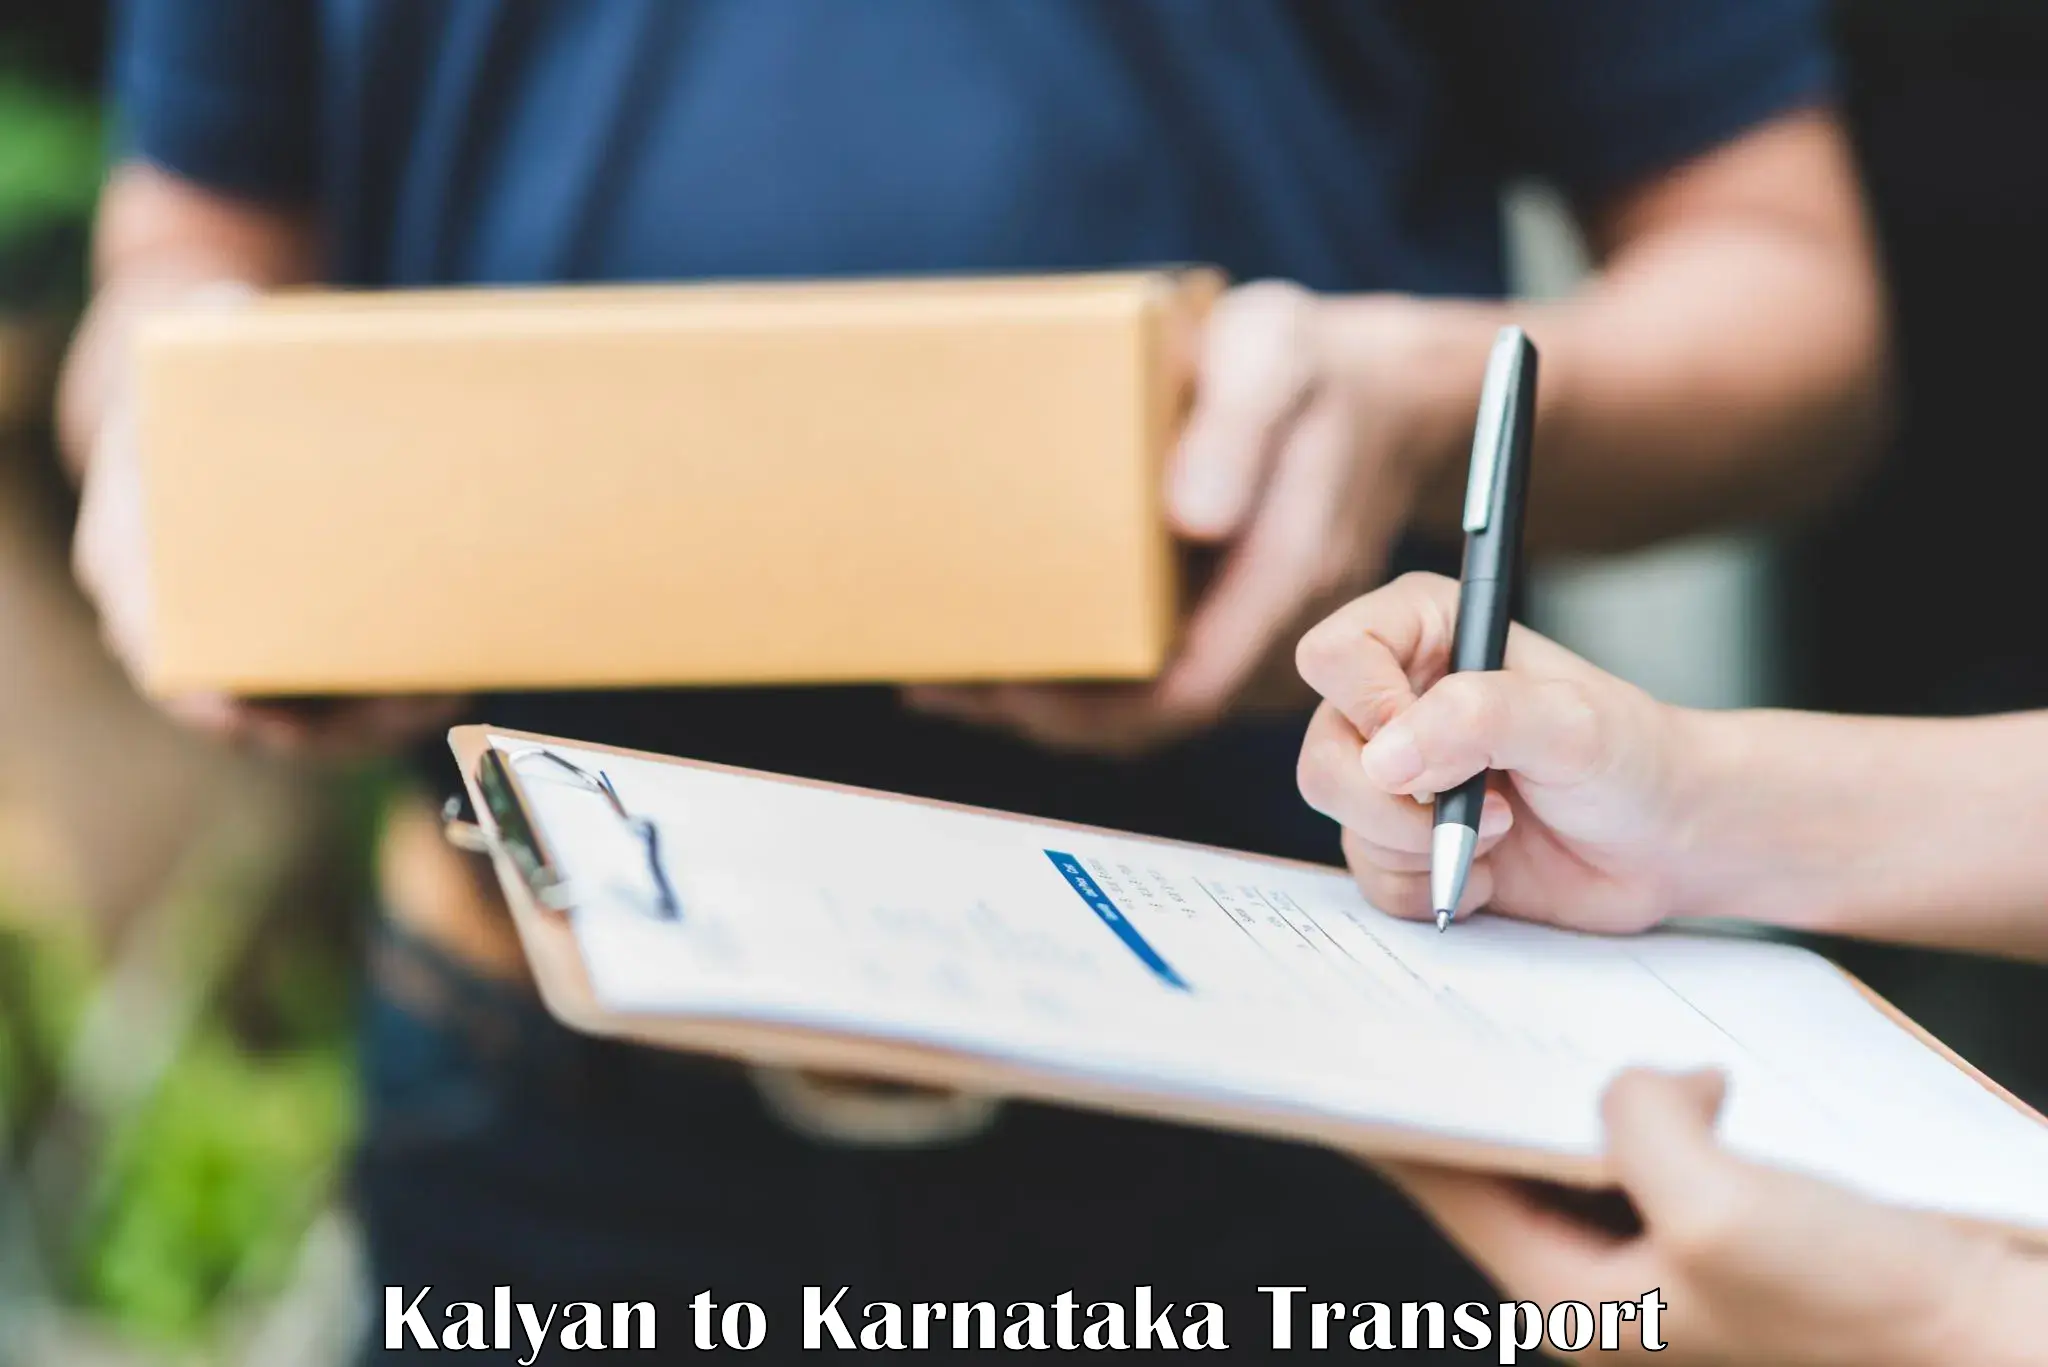 International cargo transportation services Kalyan to Pedapudi